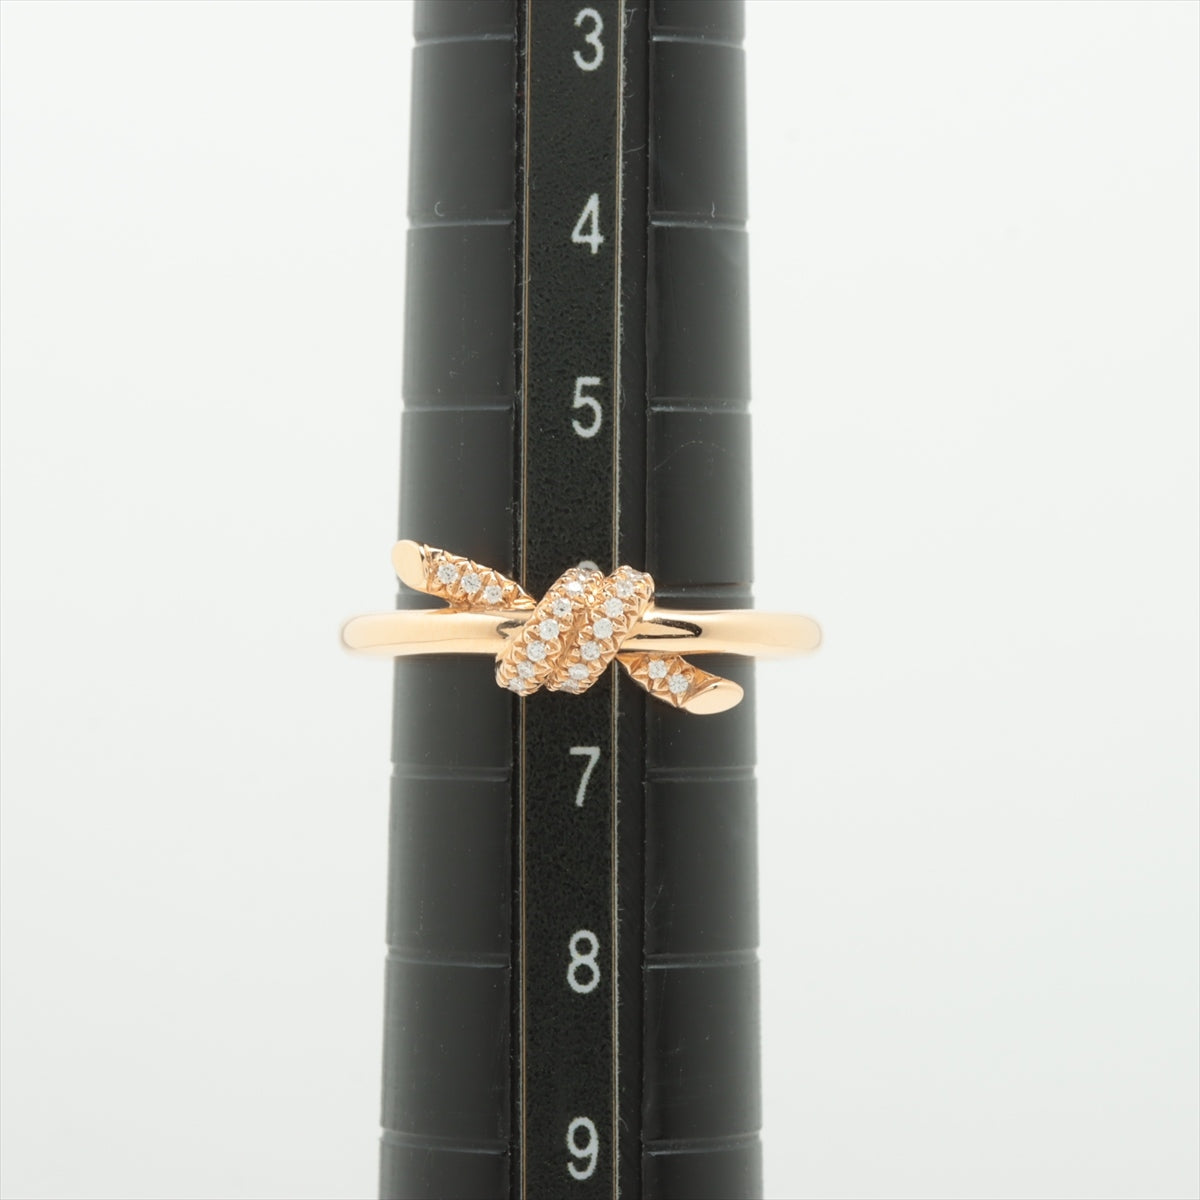 ティファニー TIFFANY&Co. リング レディース ブランド 指輪  750PG ダイヤモンド ノット ピンクゴールド 約7号 69526411 ジュエリー 磨き済み